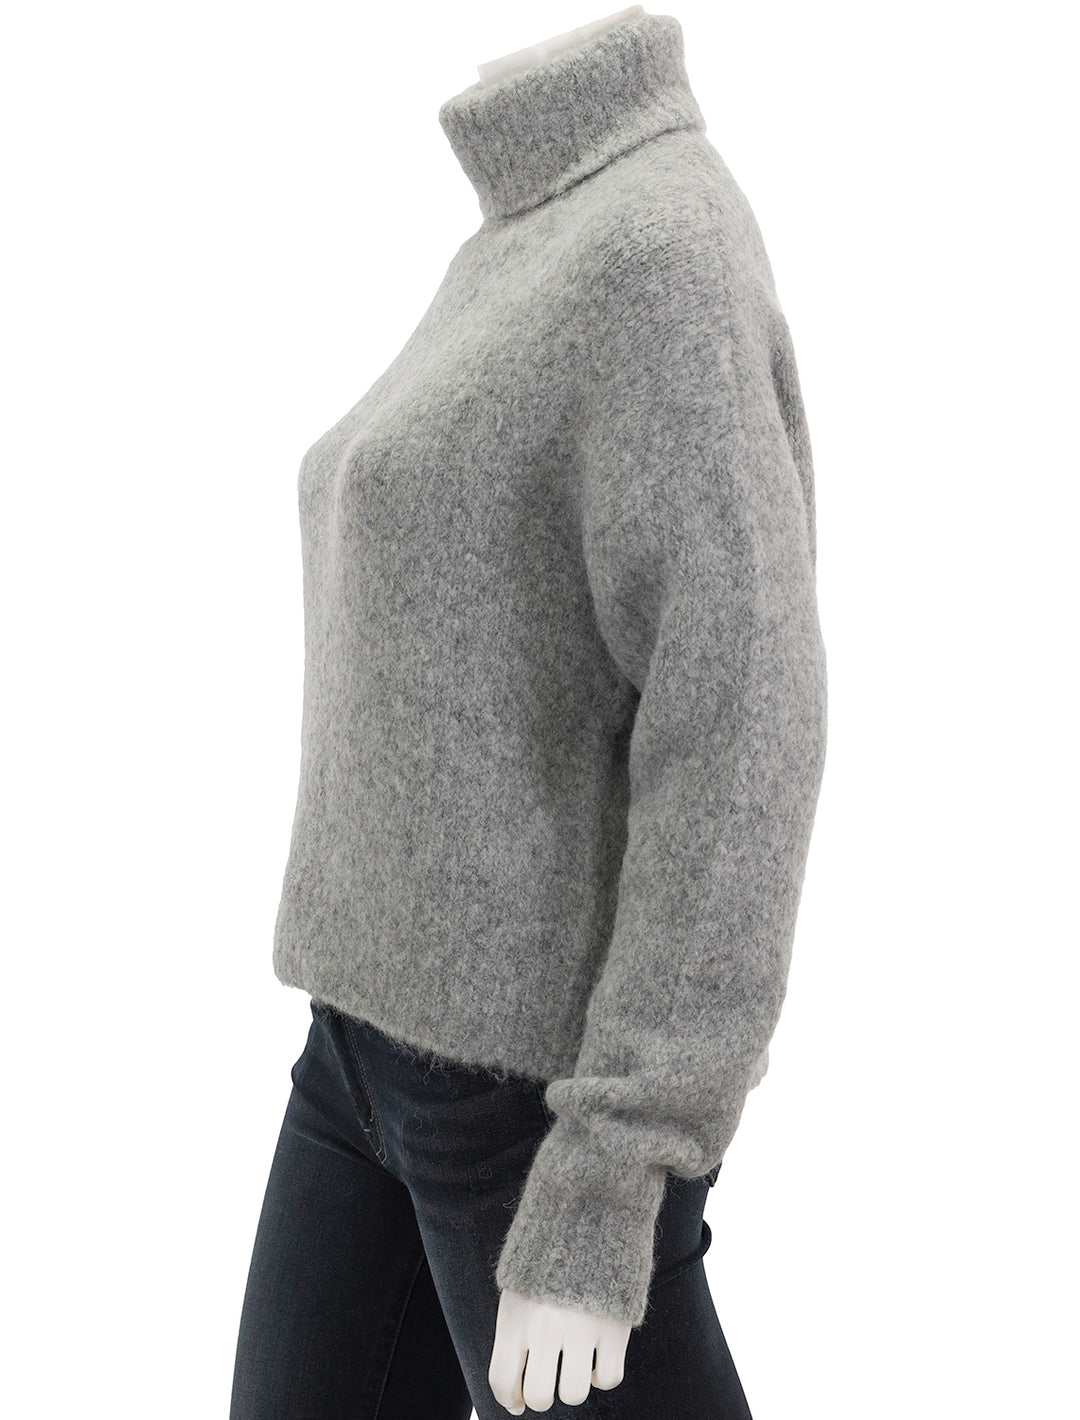 Side view of Nili Lotan's sierra sweater in light grey melange.